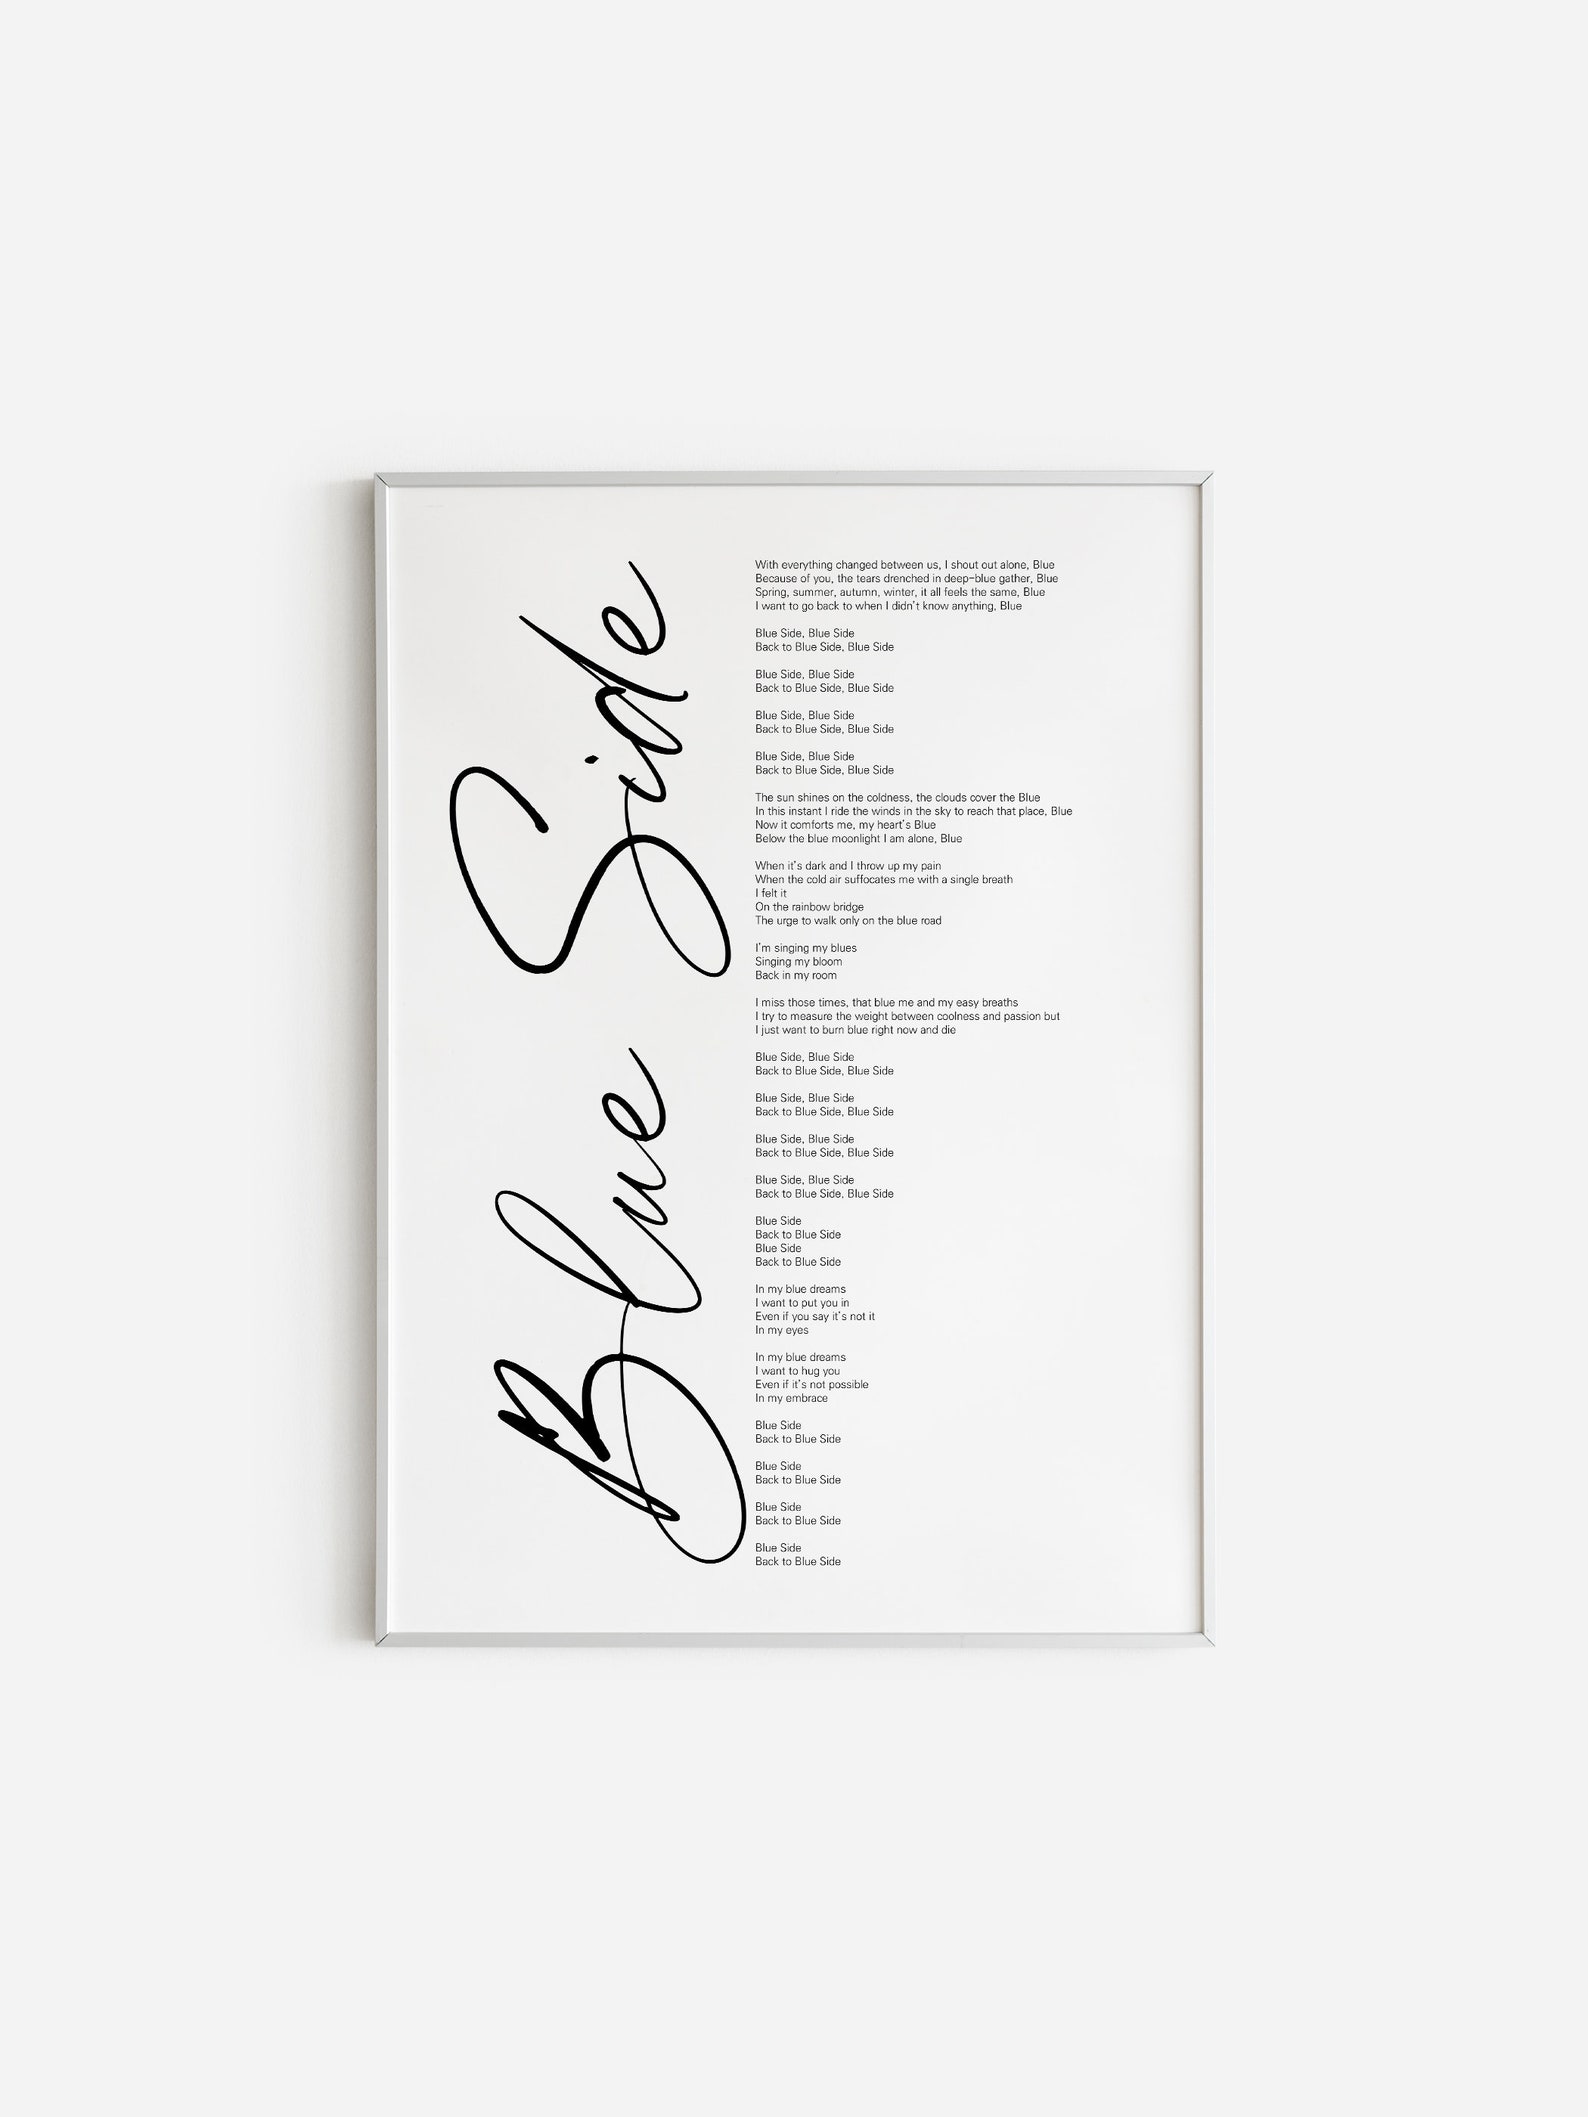 Bts J Hope Blue Side Lyrics Prints Poster Descarga Digital Etsy